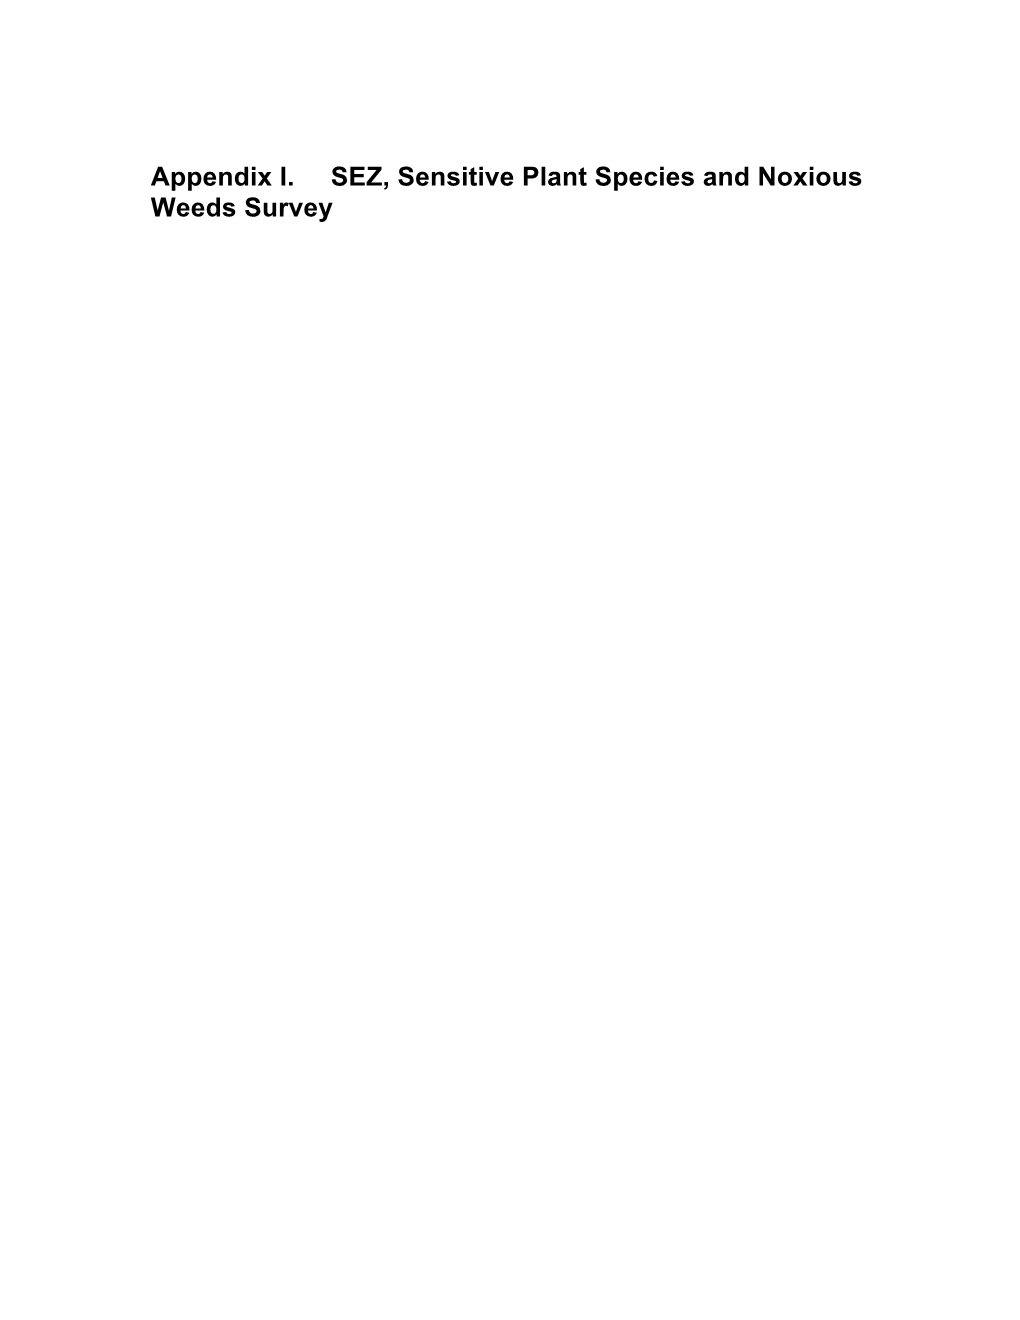 Appendix I. SEZ, Sensitive Plant Species and Noxious Weeds Survey